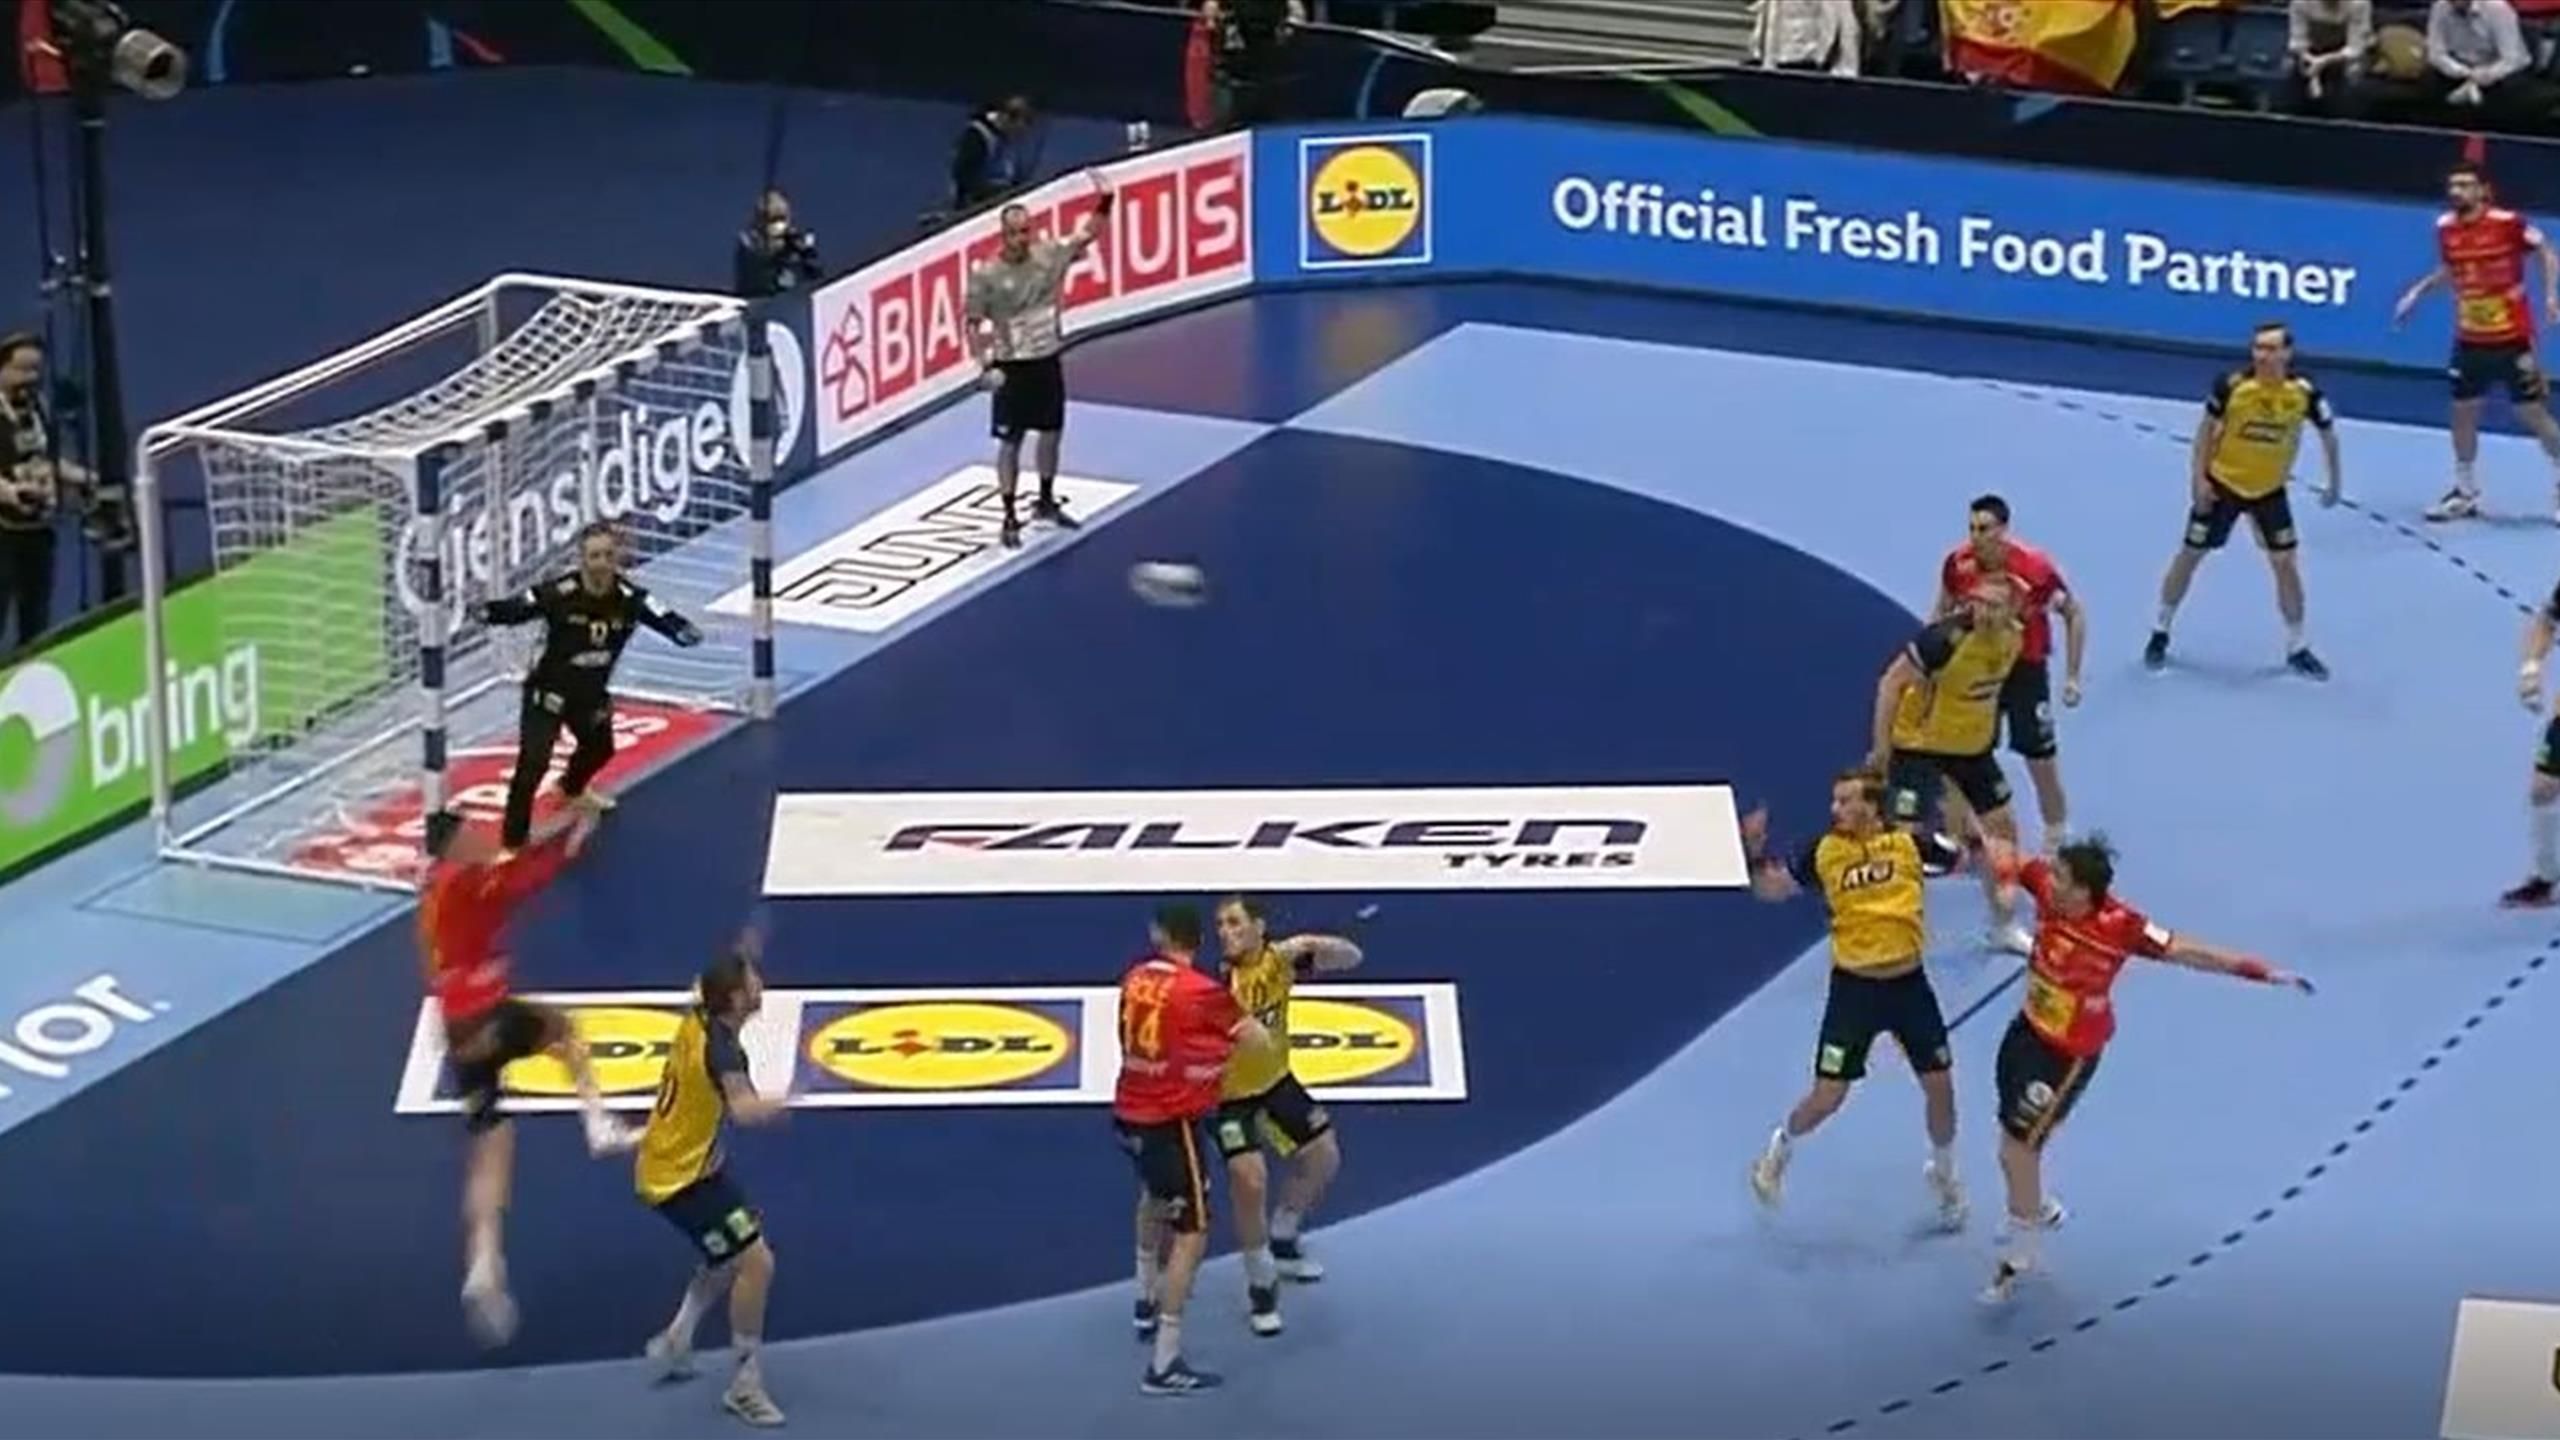 Handball-EM Spanien zaubert gegen Schweden mit spektakulärem Kempa-Trick - Highlights - Handball Video